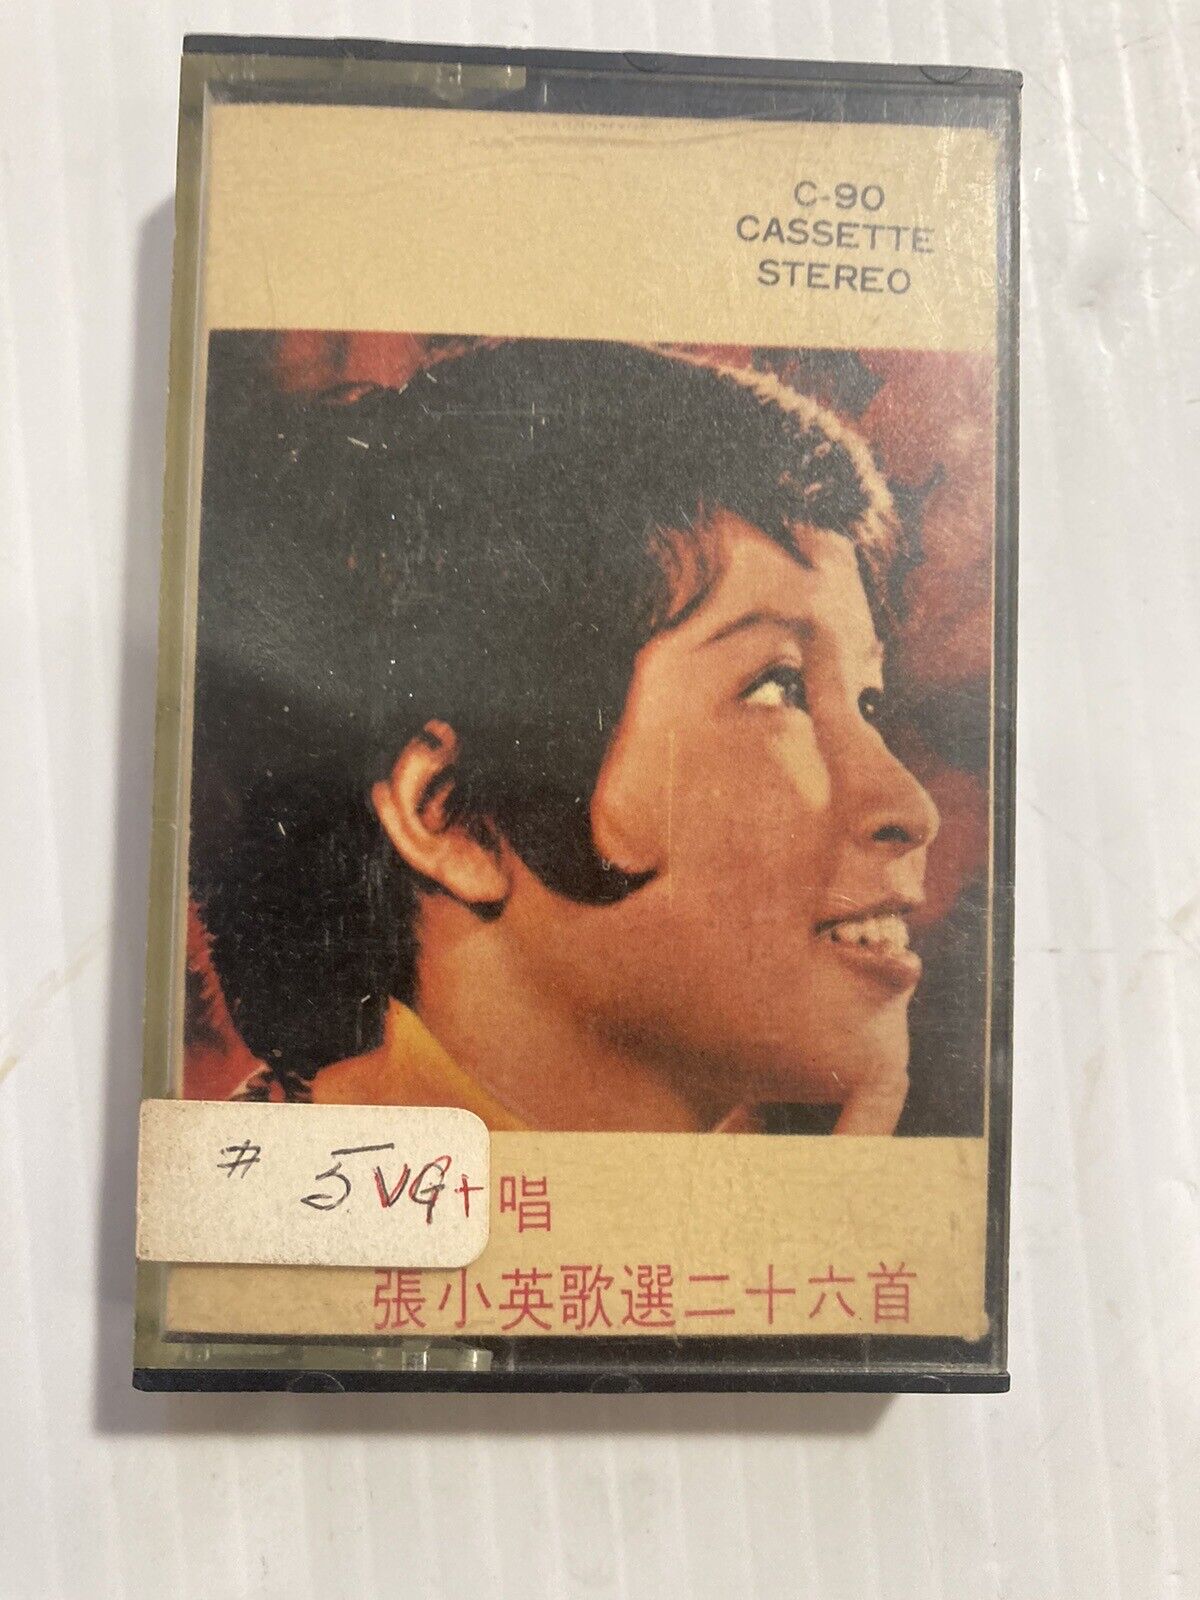 Vtg. Audio  Cassette Tape - Chinese Singer - Asian - C-90 - Tested